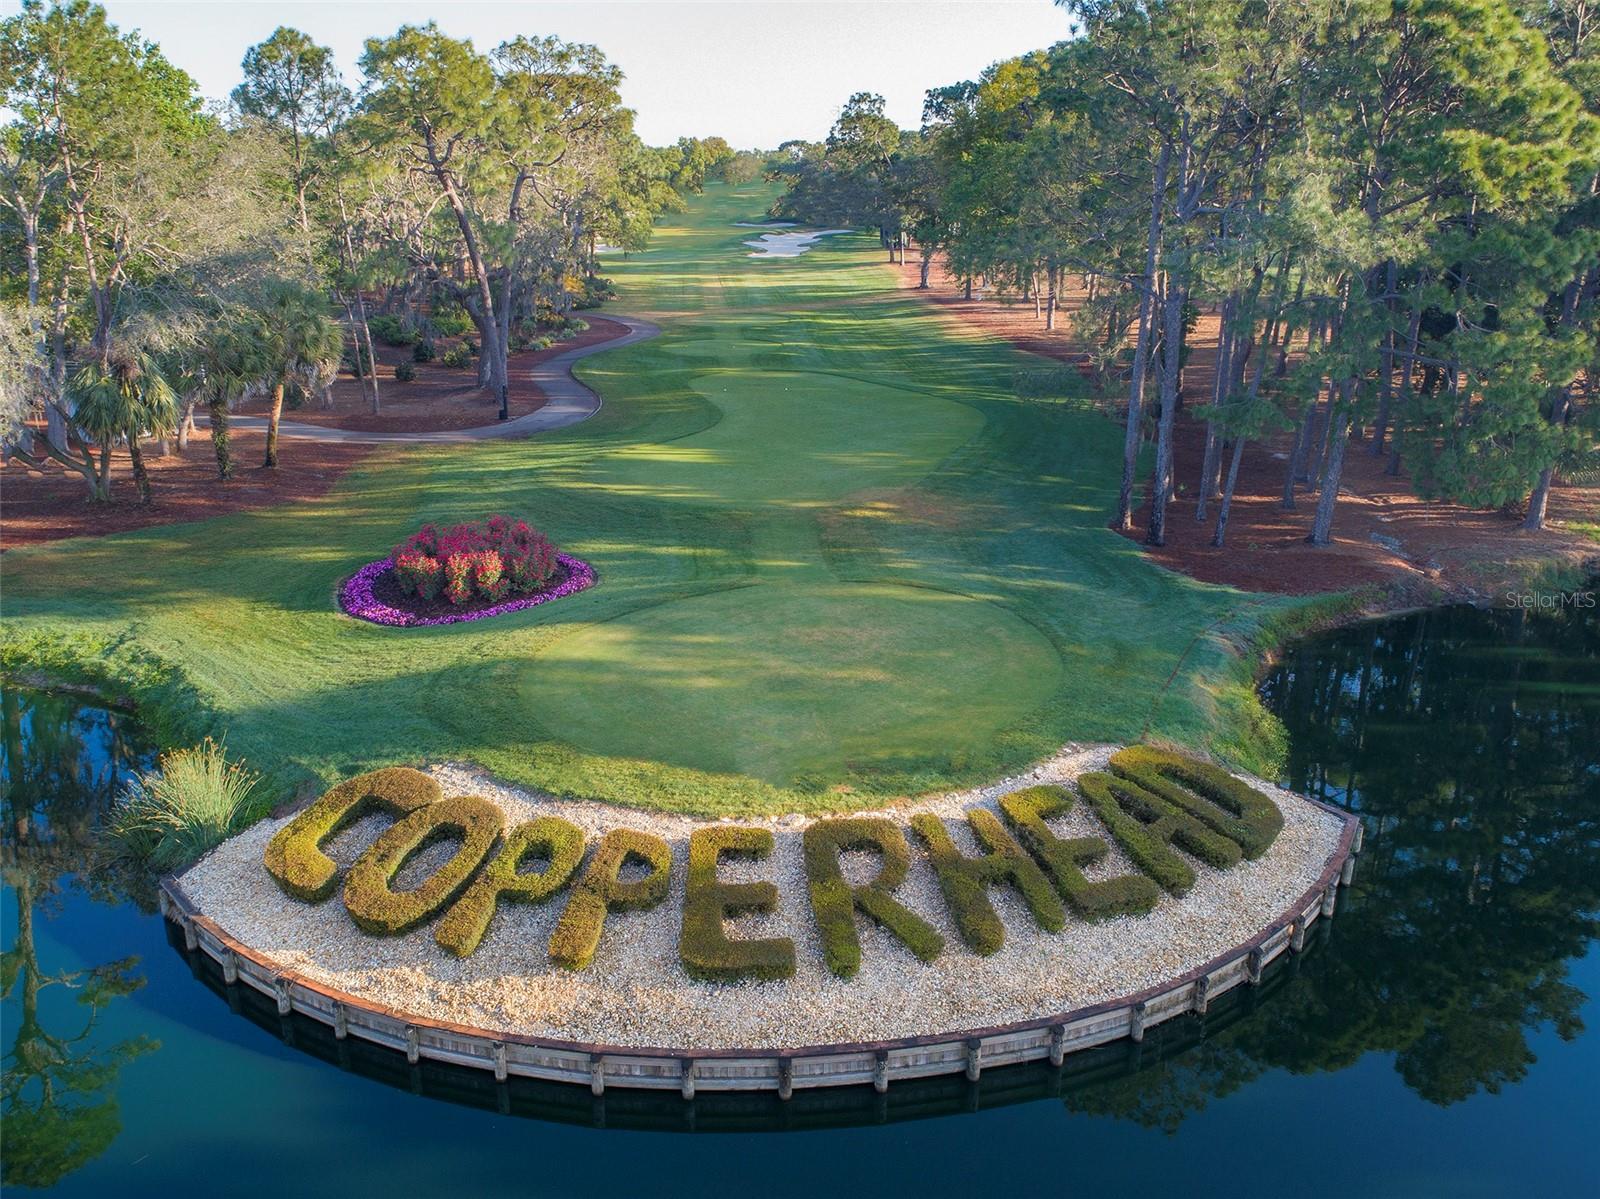 The Copperhead Golf Course hosts the PGA Tour Valspar Tournament